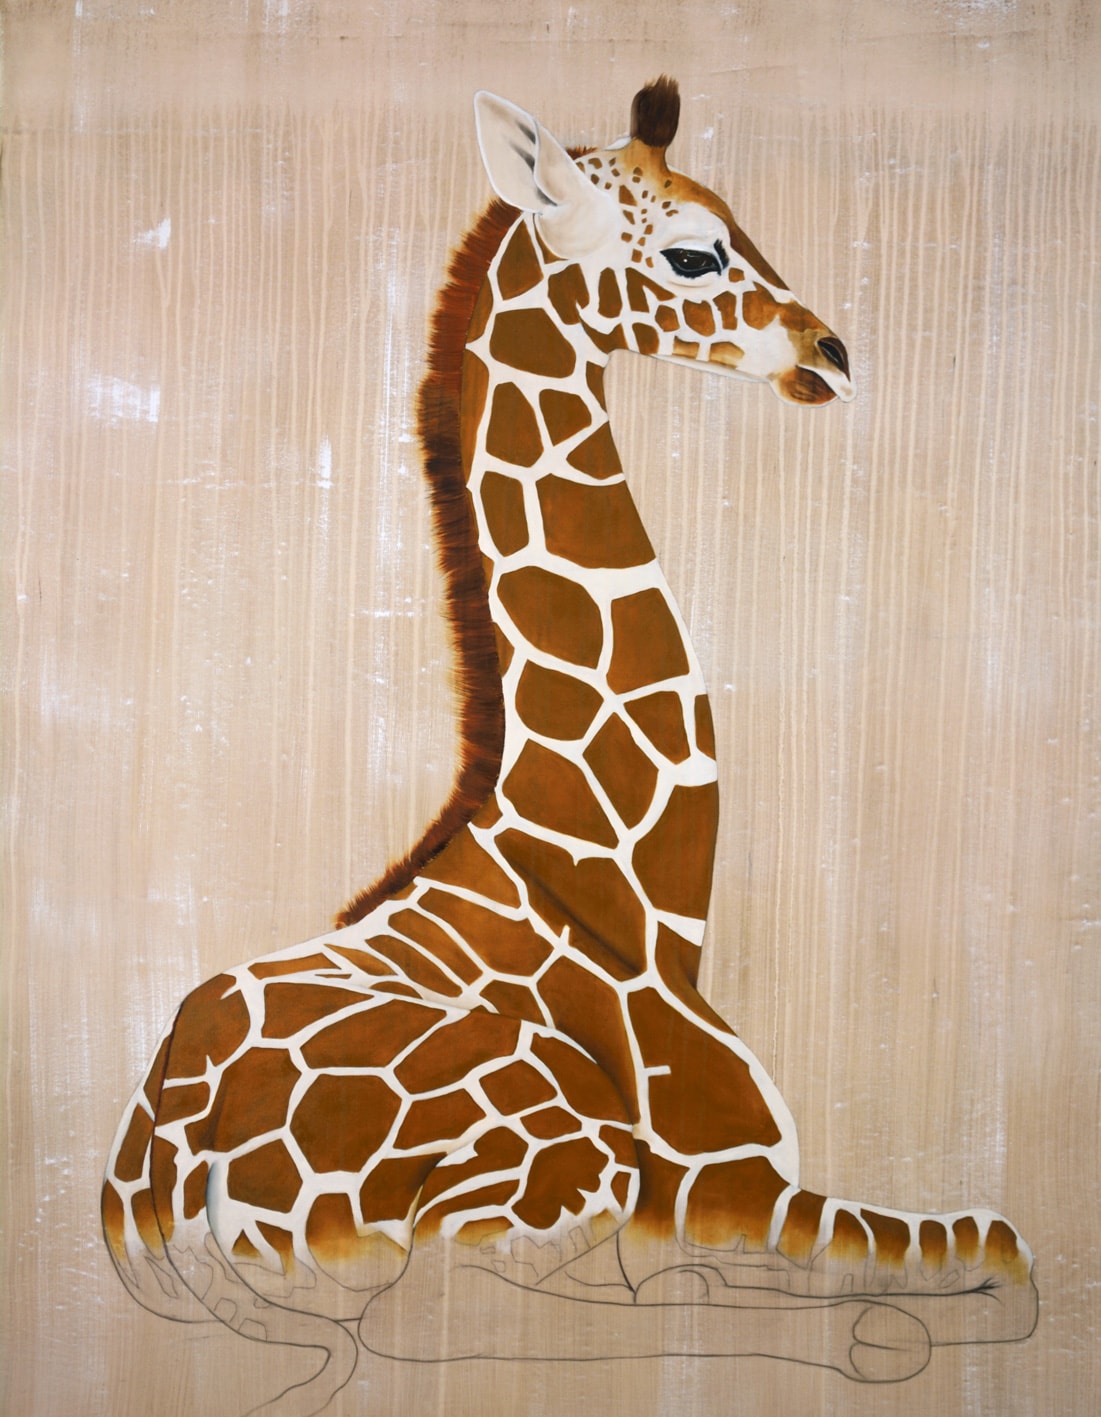 GIRAFE de Rothschild giraffe-rothschild-threatened-endangered-extinction Thierry Bisch Contemporary painter animals painting art decoration nature biodiversity conservation